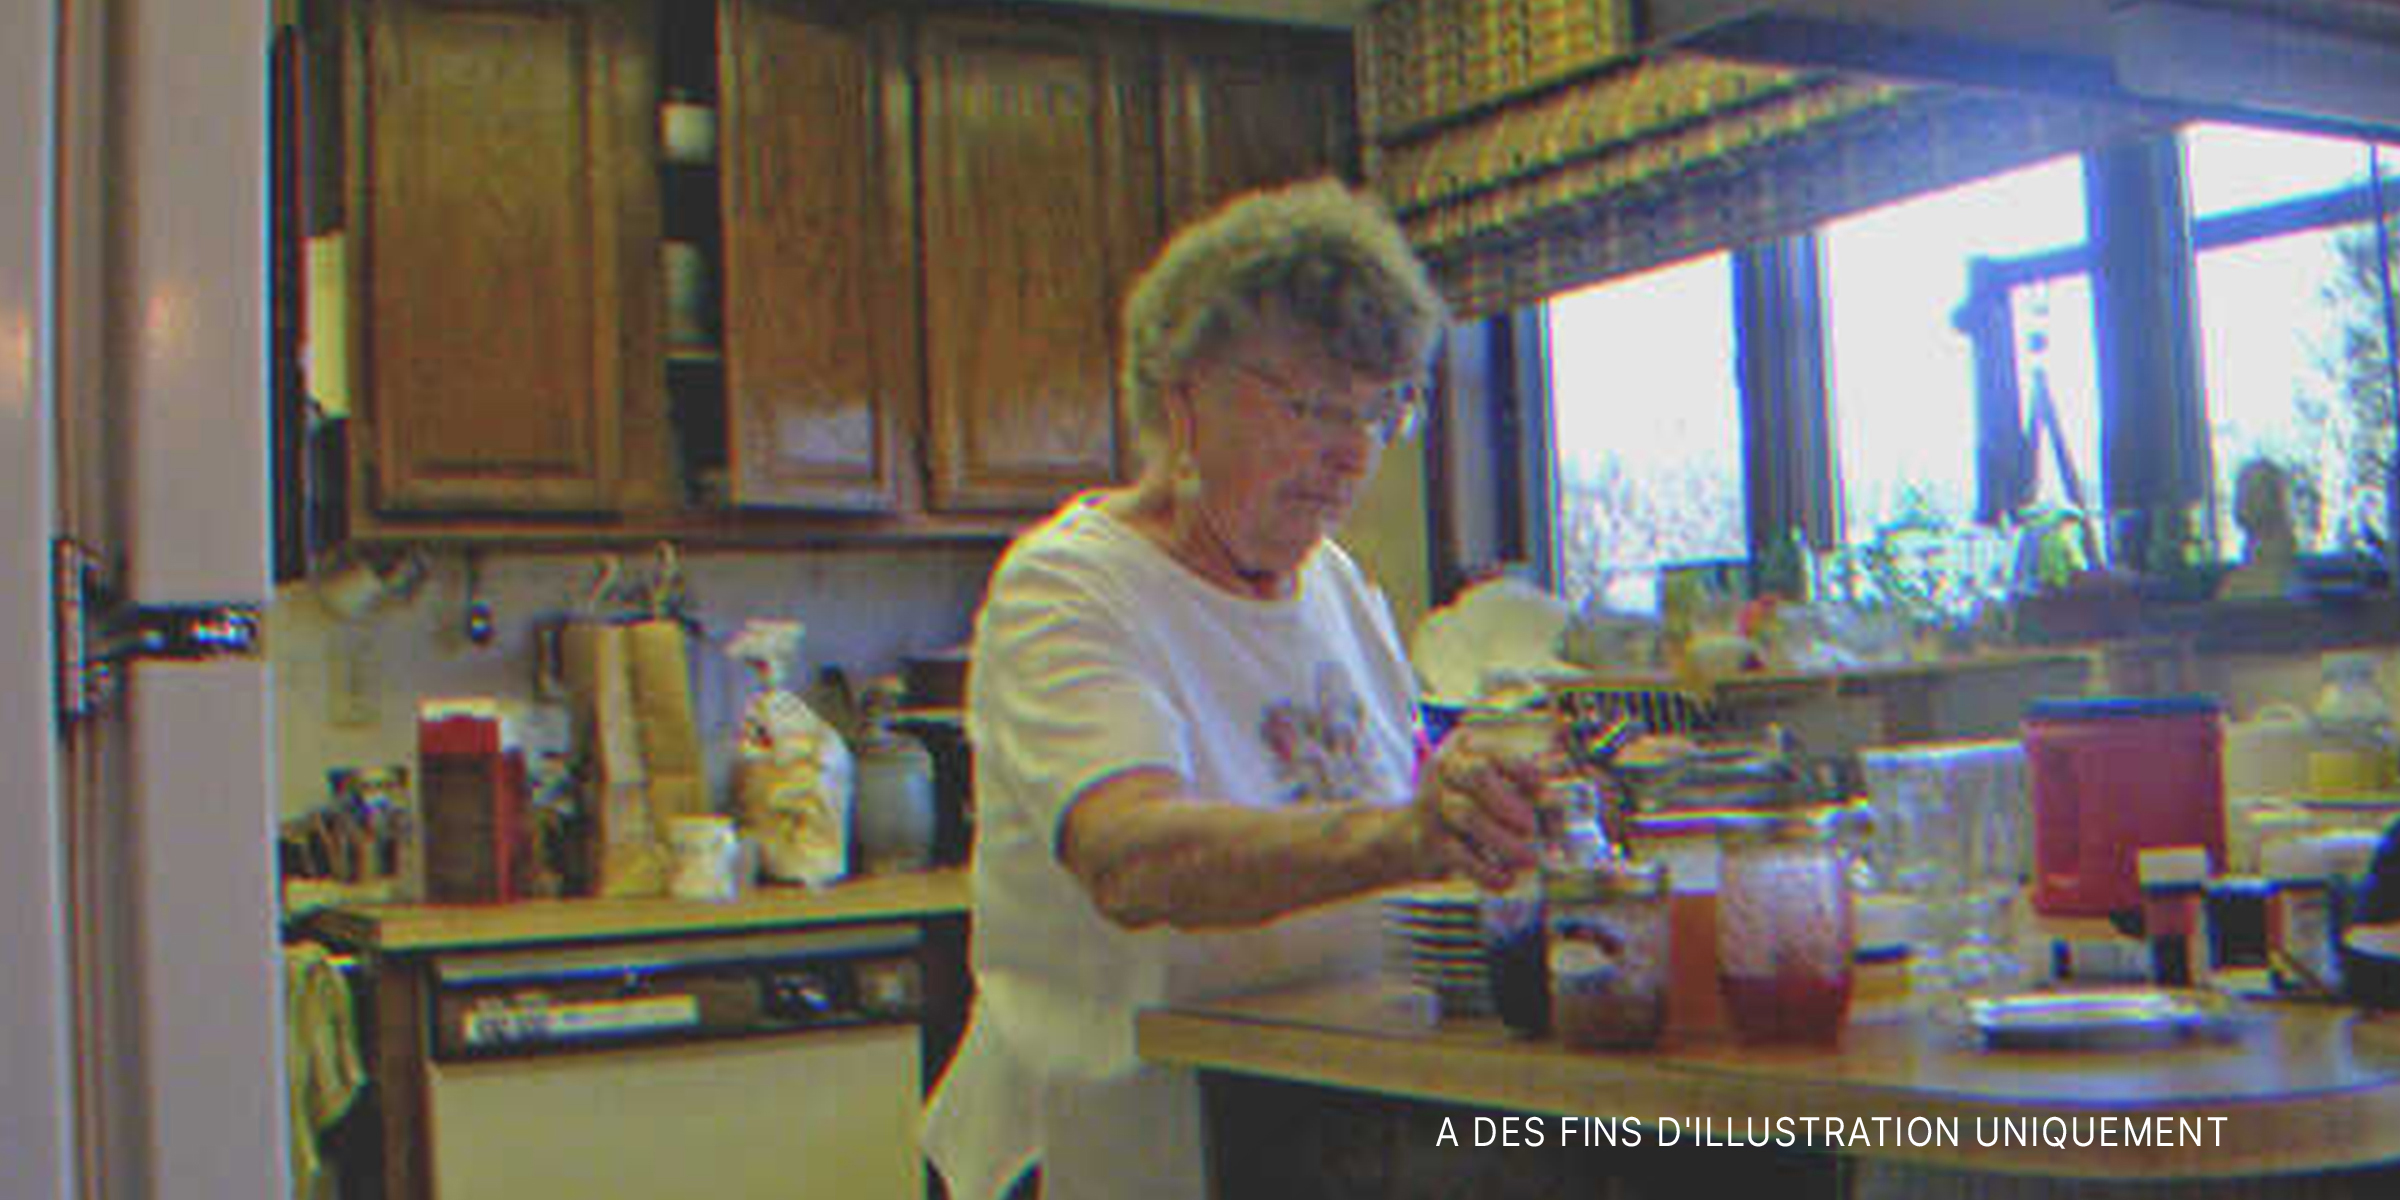 Femme âgée dans la cuisine | Source : Flickr / bradleygee (CC BY 2.0)